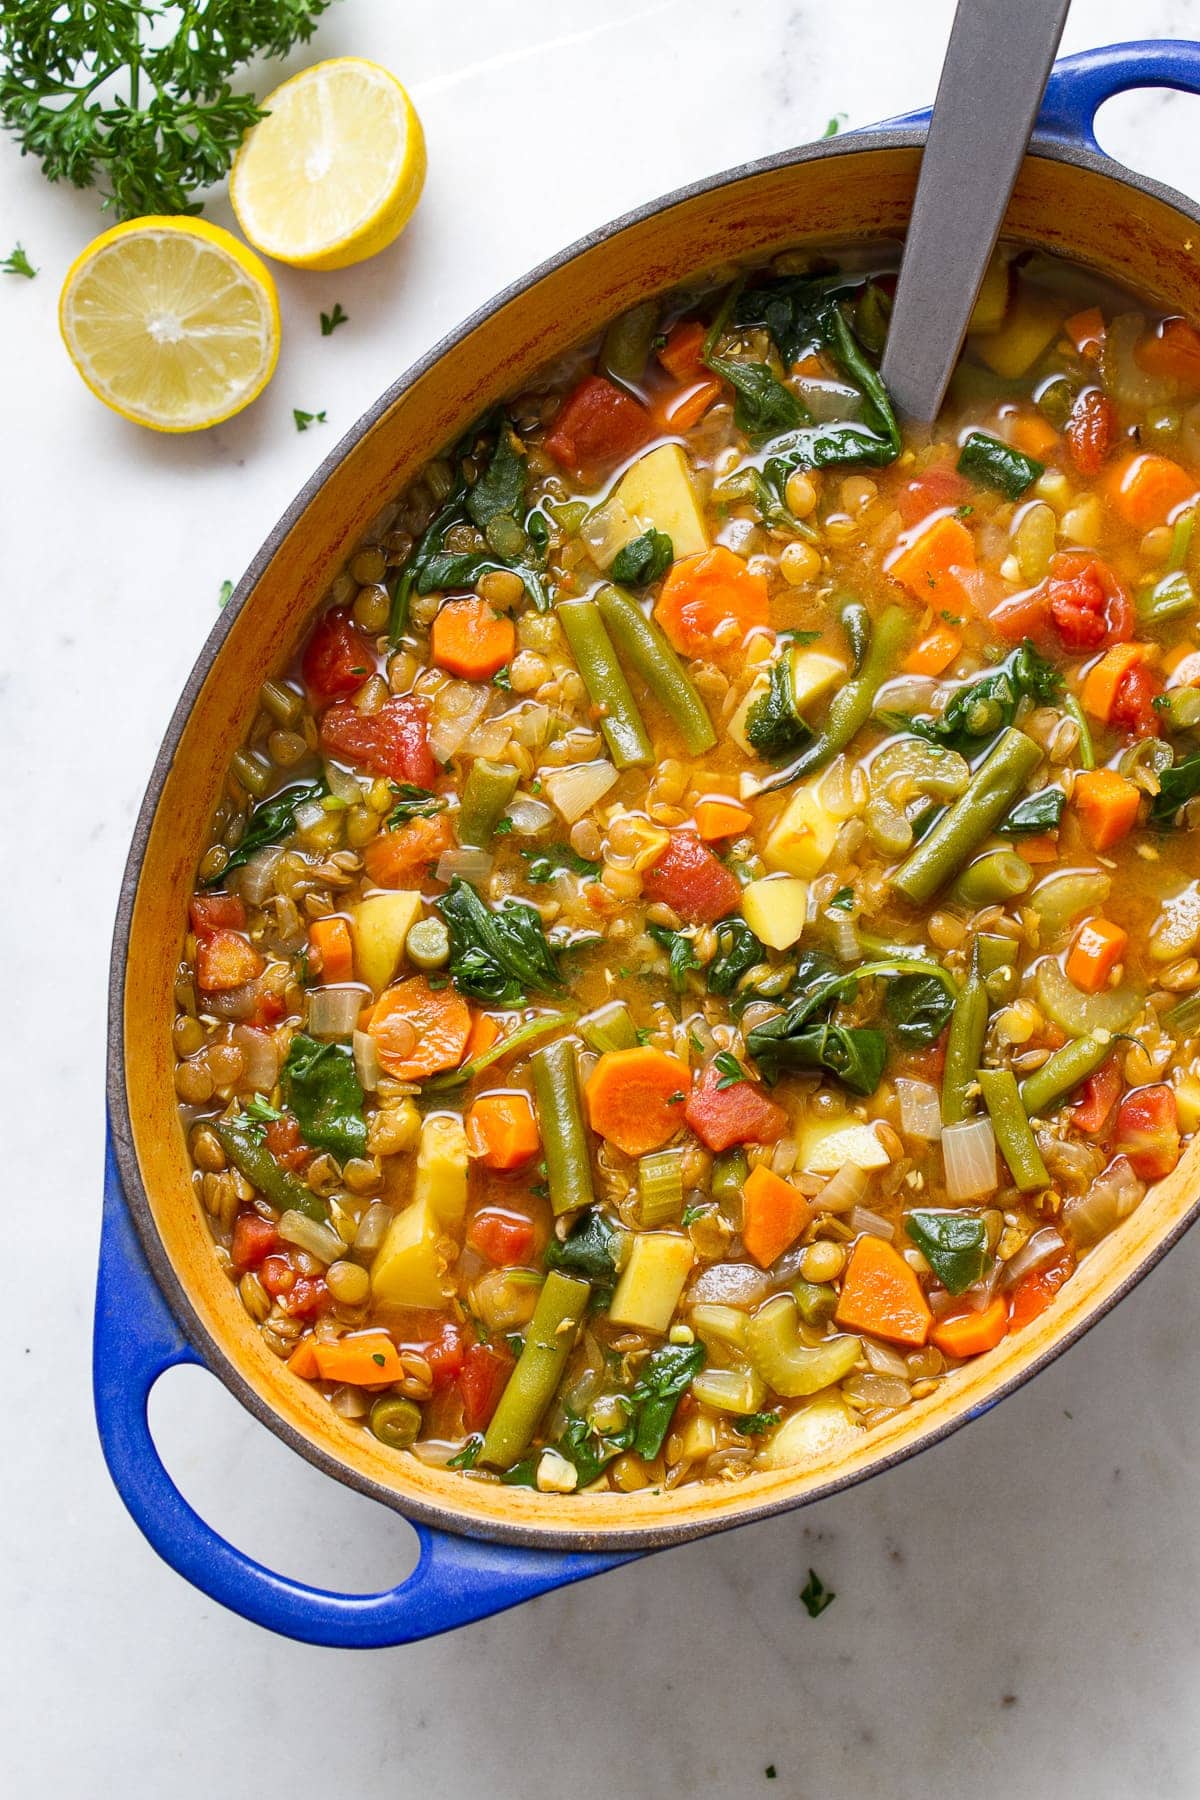 Hearty Vegan Lentil Soup - A Delicious 1-Pot Soup Recipe